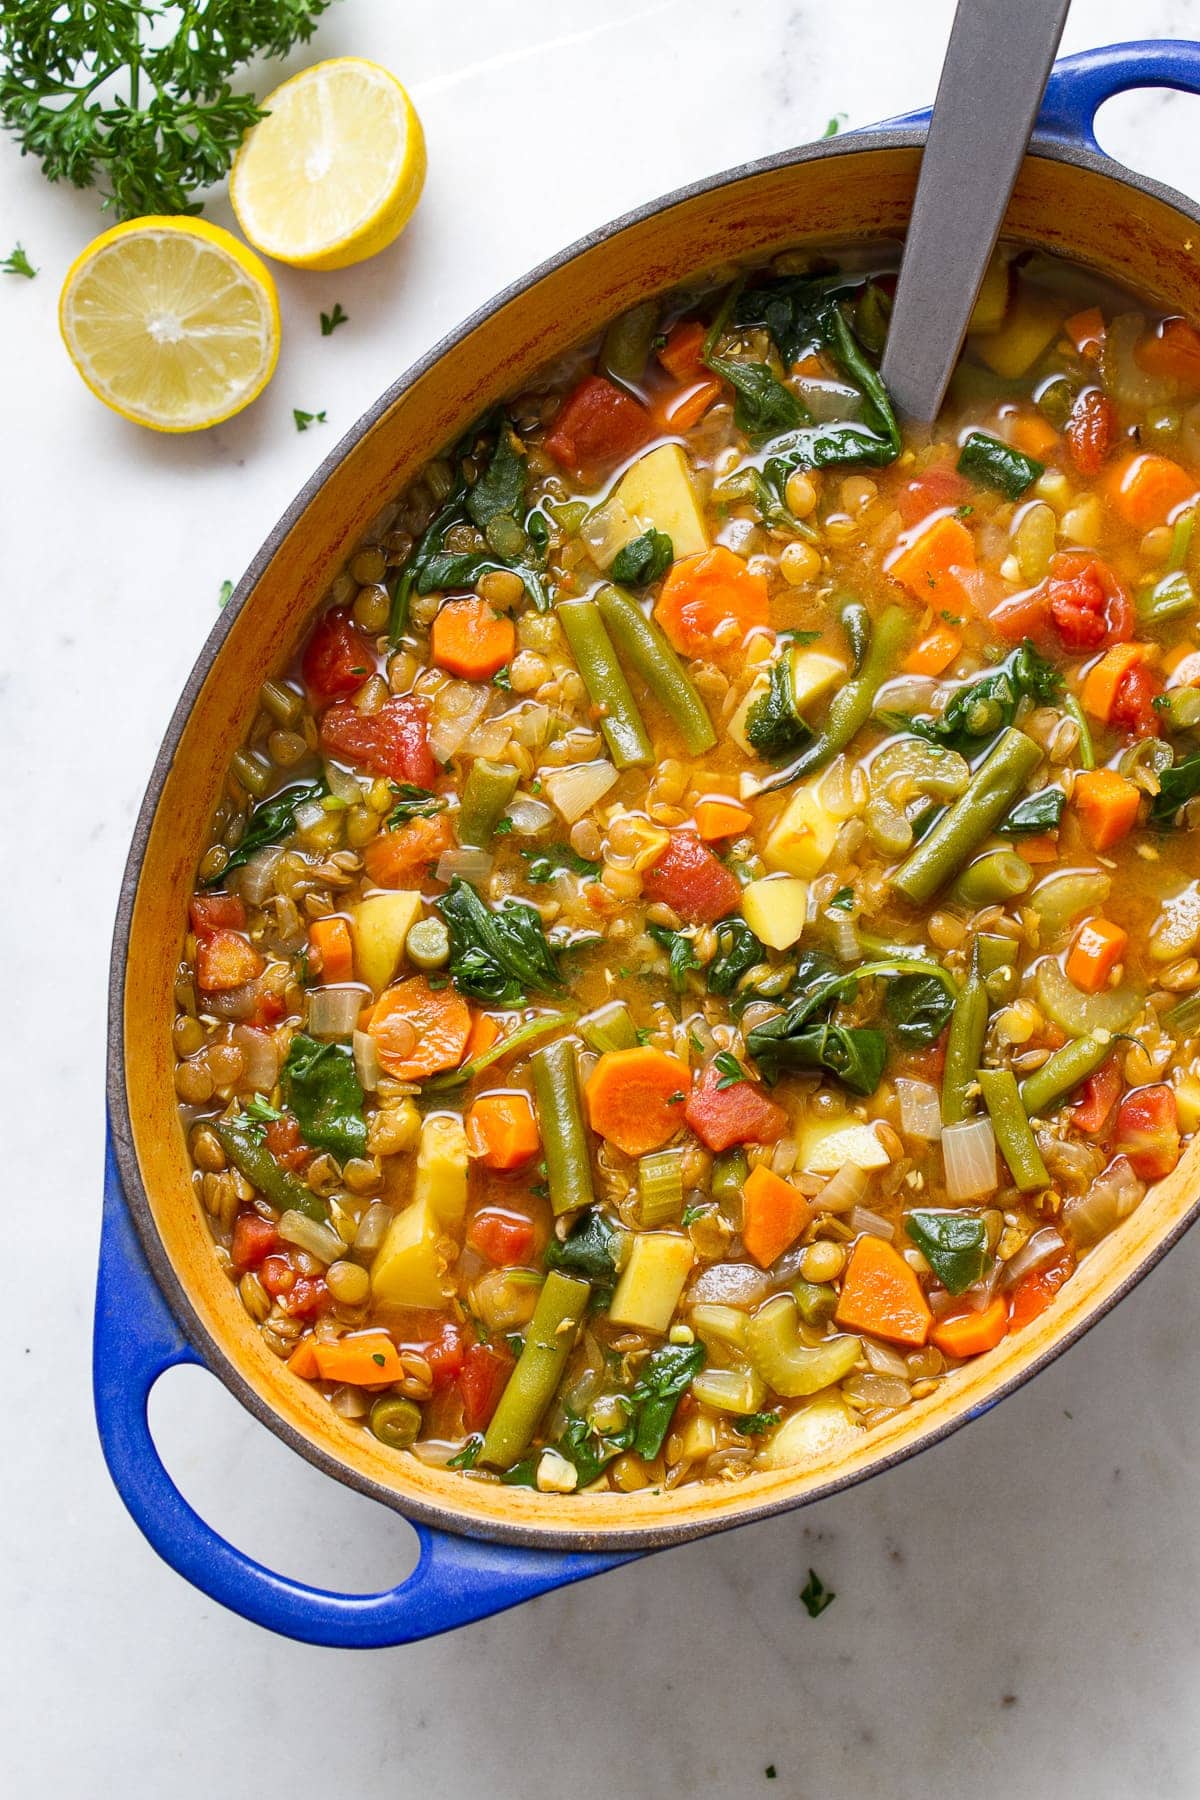 Hearty Vegan Lentil Soup - A Delicious 1-Pot Soup Recipe